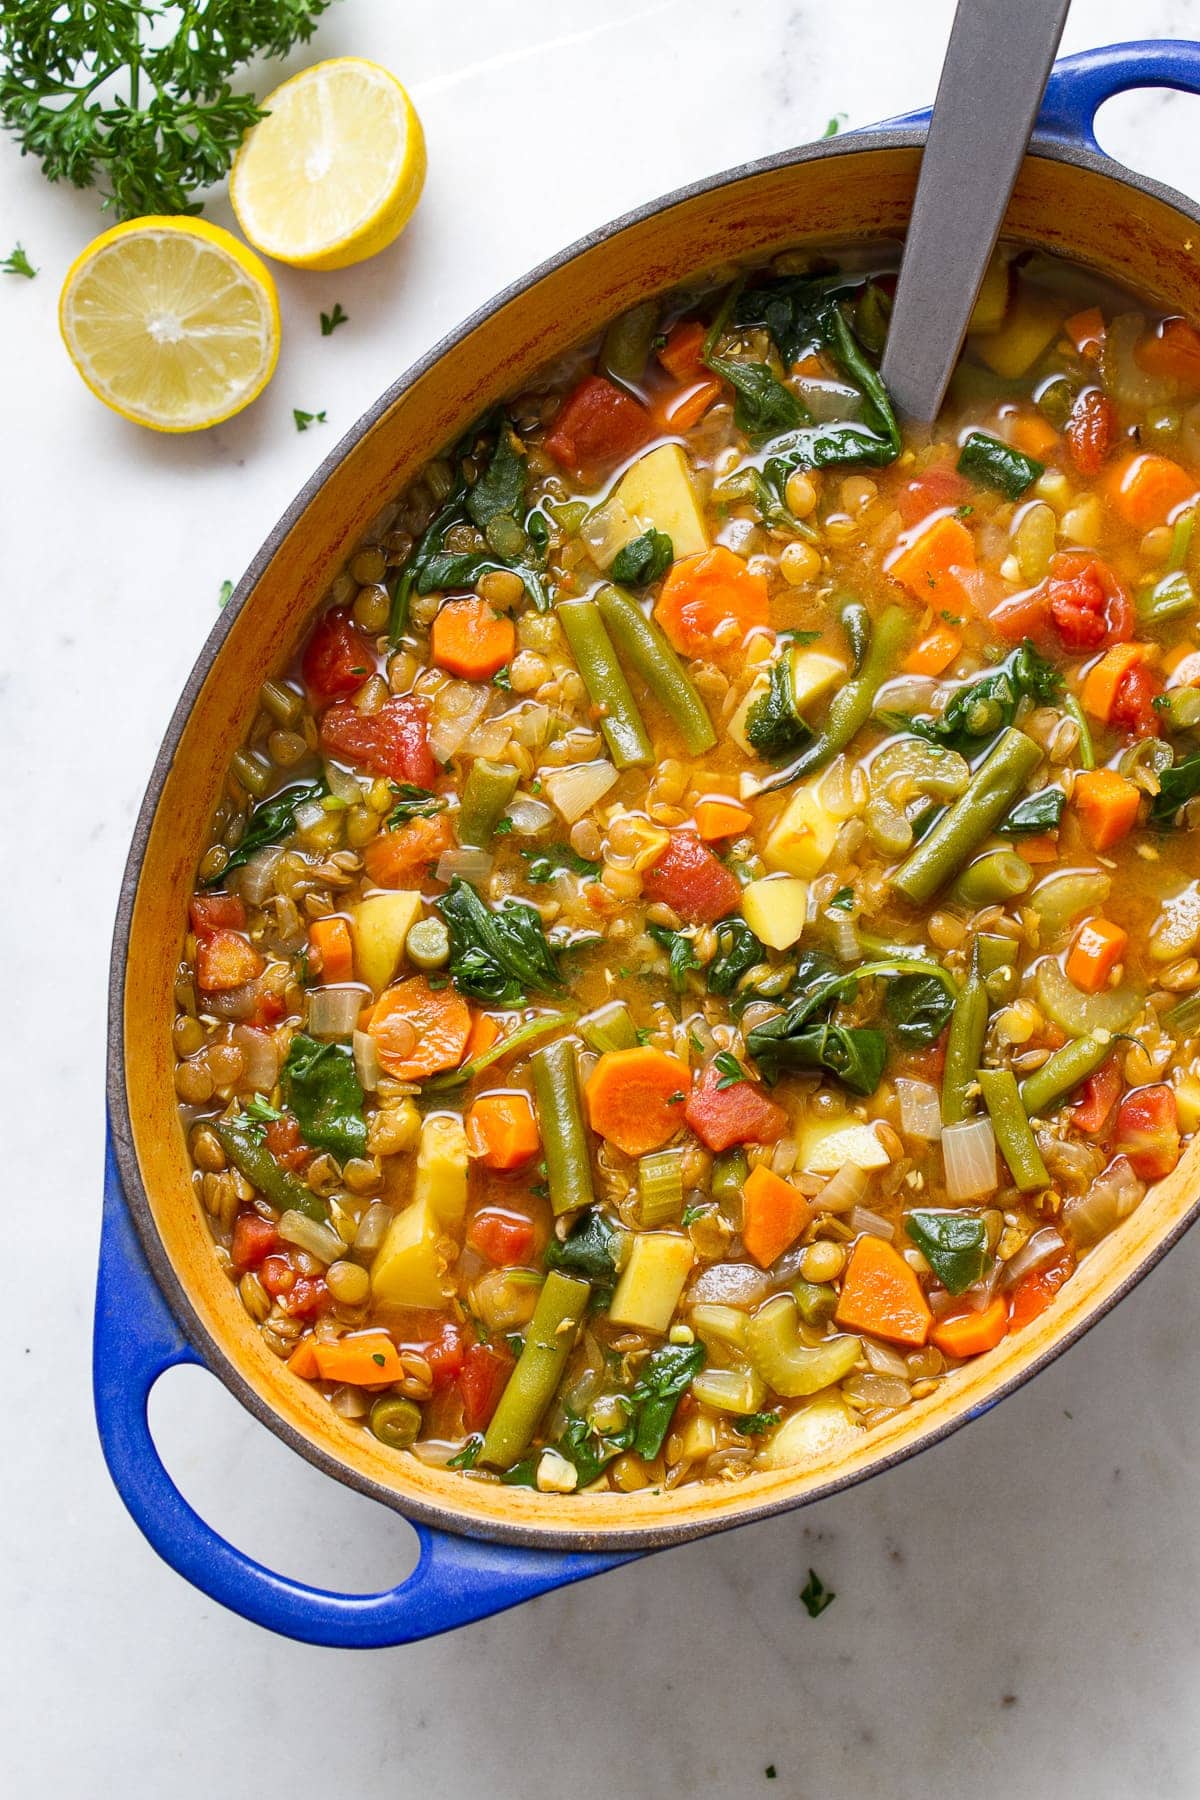 Hearty Vegan Lentil Soup - A Delicious 1-Pot Soup Recipe